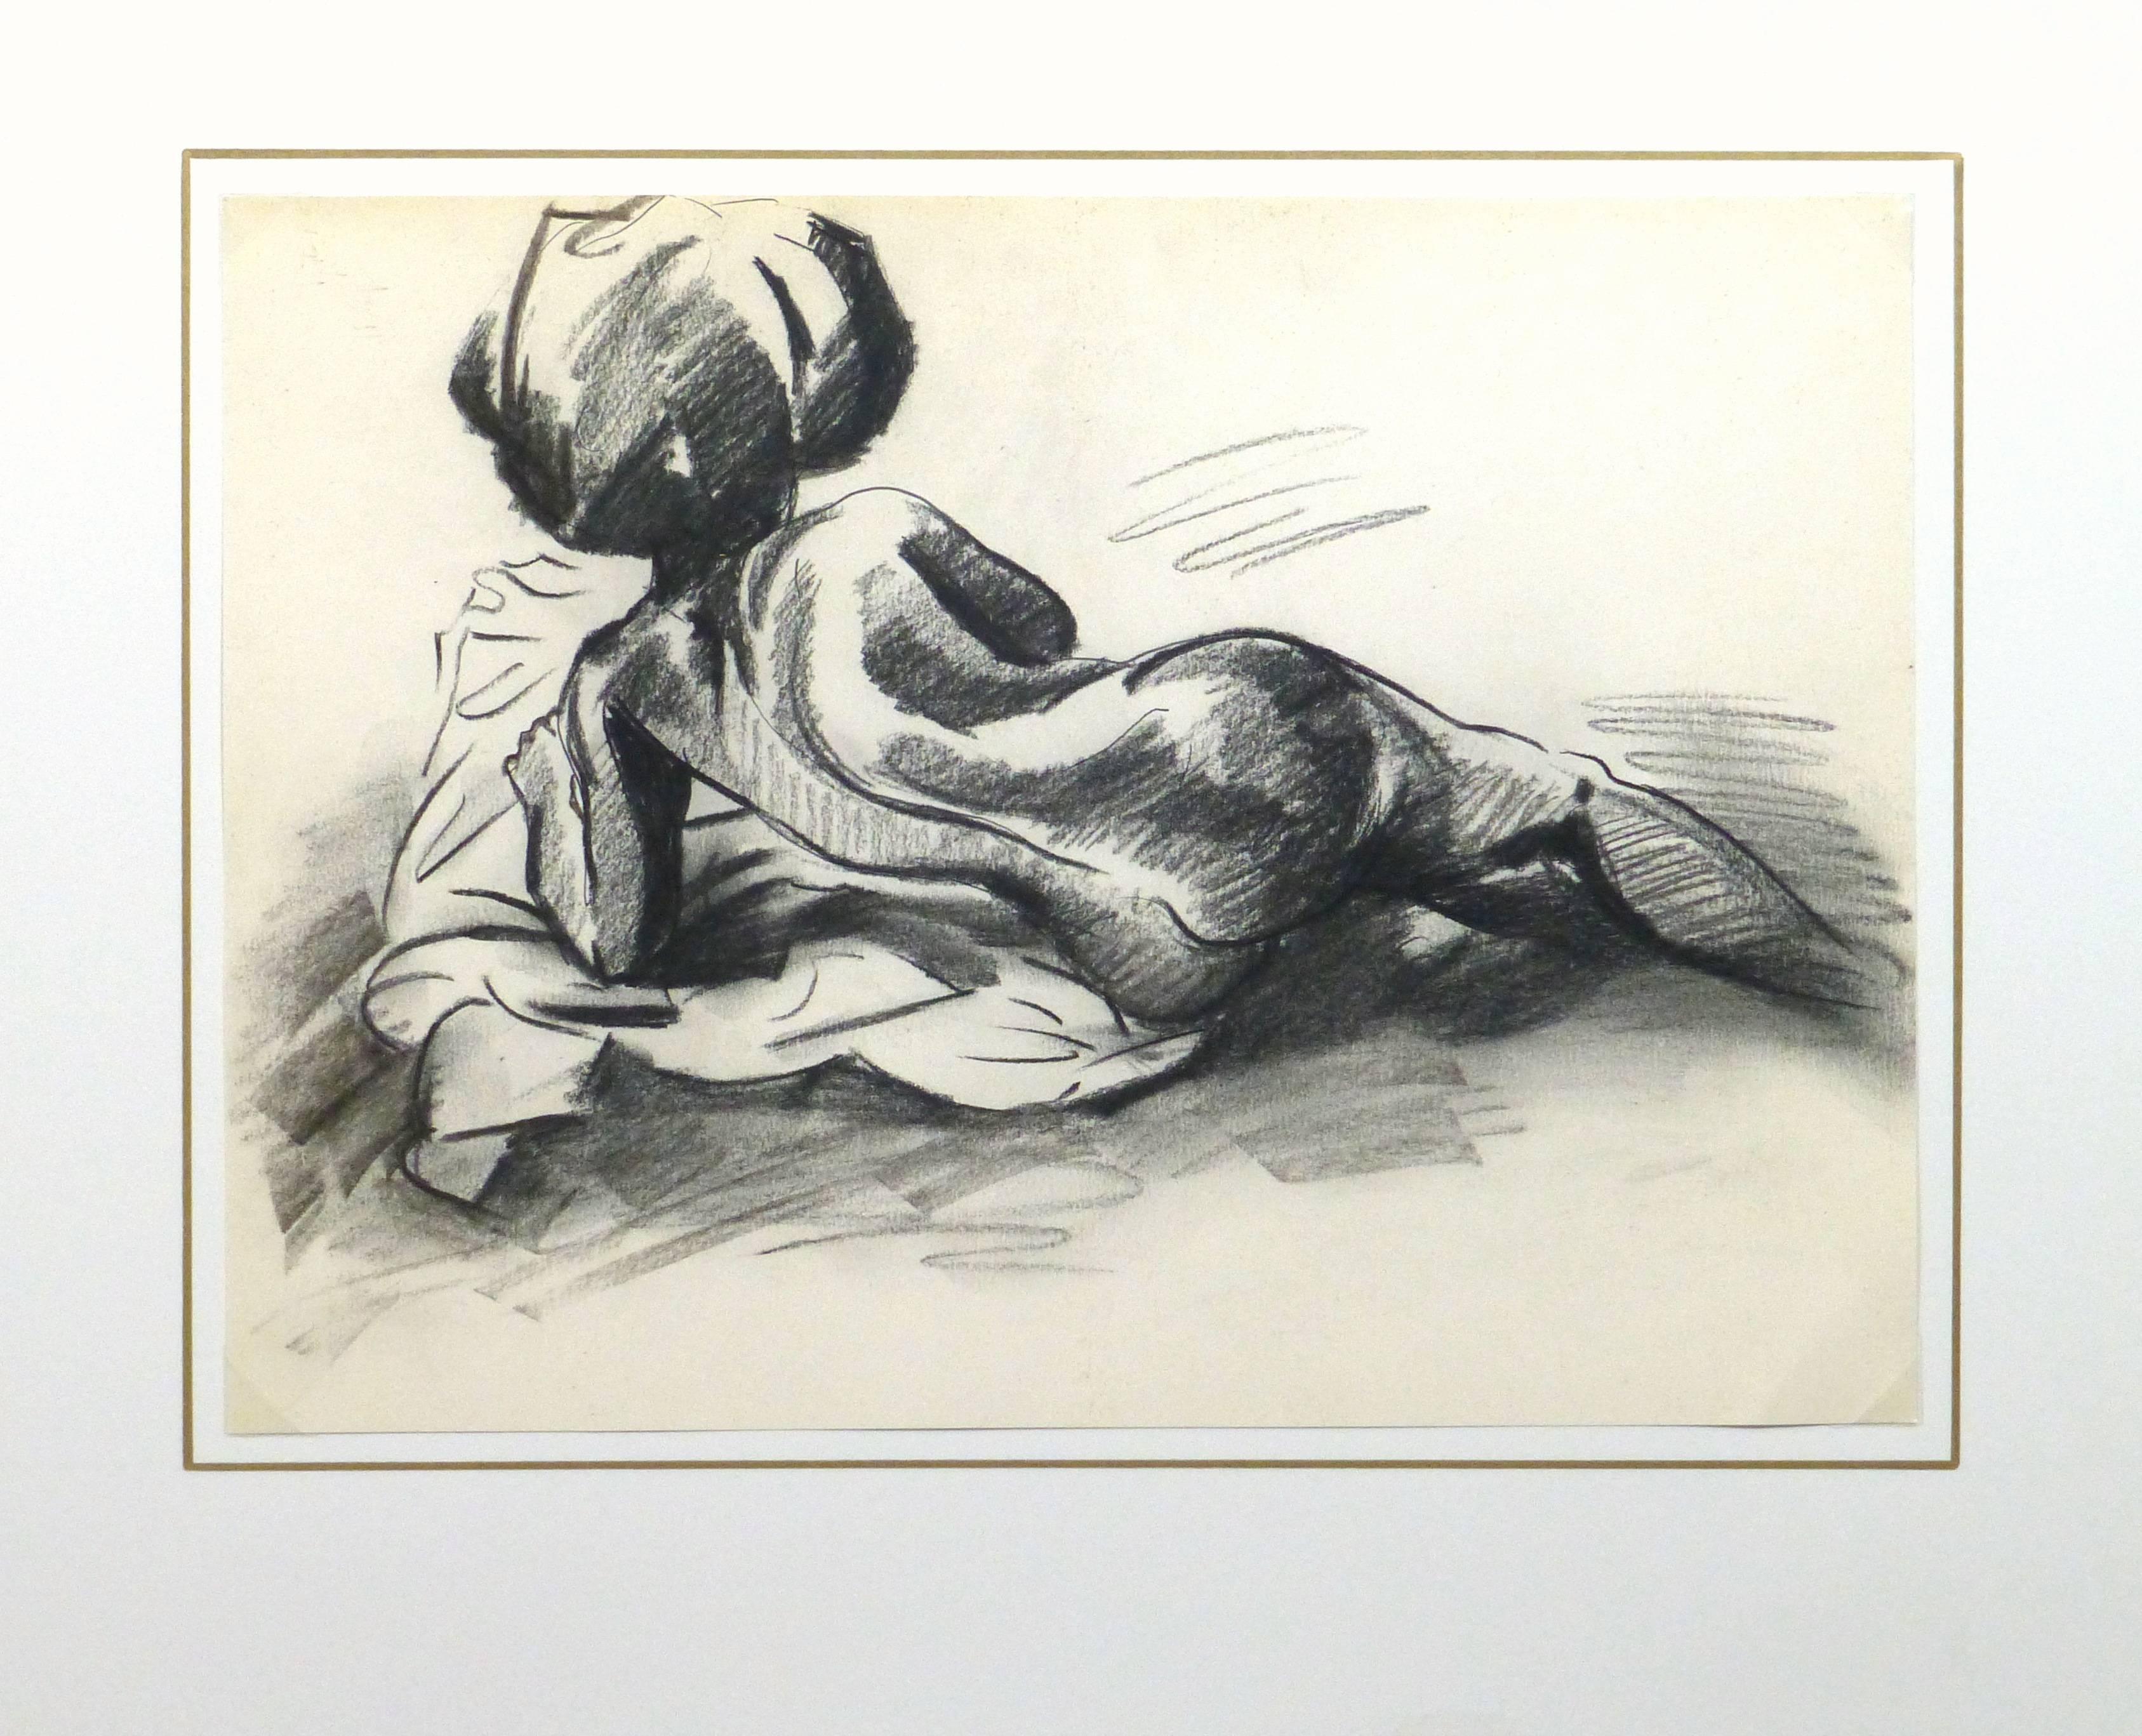 Kräftiger schwarzer und weißer Pastellakt einer Rückenansicht einer liegenden weiblichen Figur von Kei Mitsuuchi, um 1990.

Originalkunstwerk auf Papier auf einem weißen Passepartout mit Goldrand. Die Matte passt in einen Rahmen in Standardgröße.